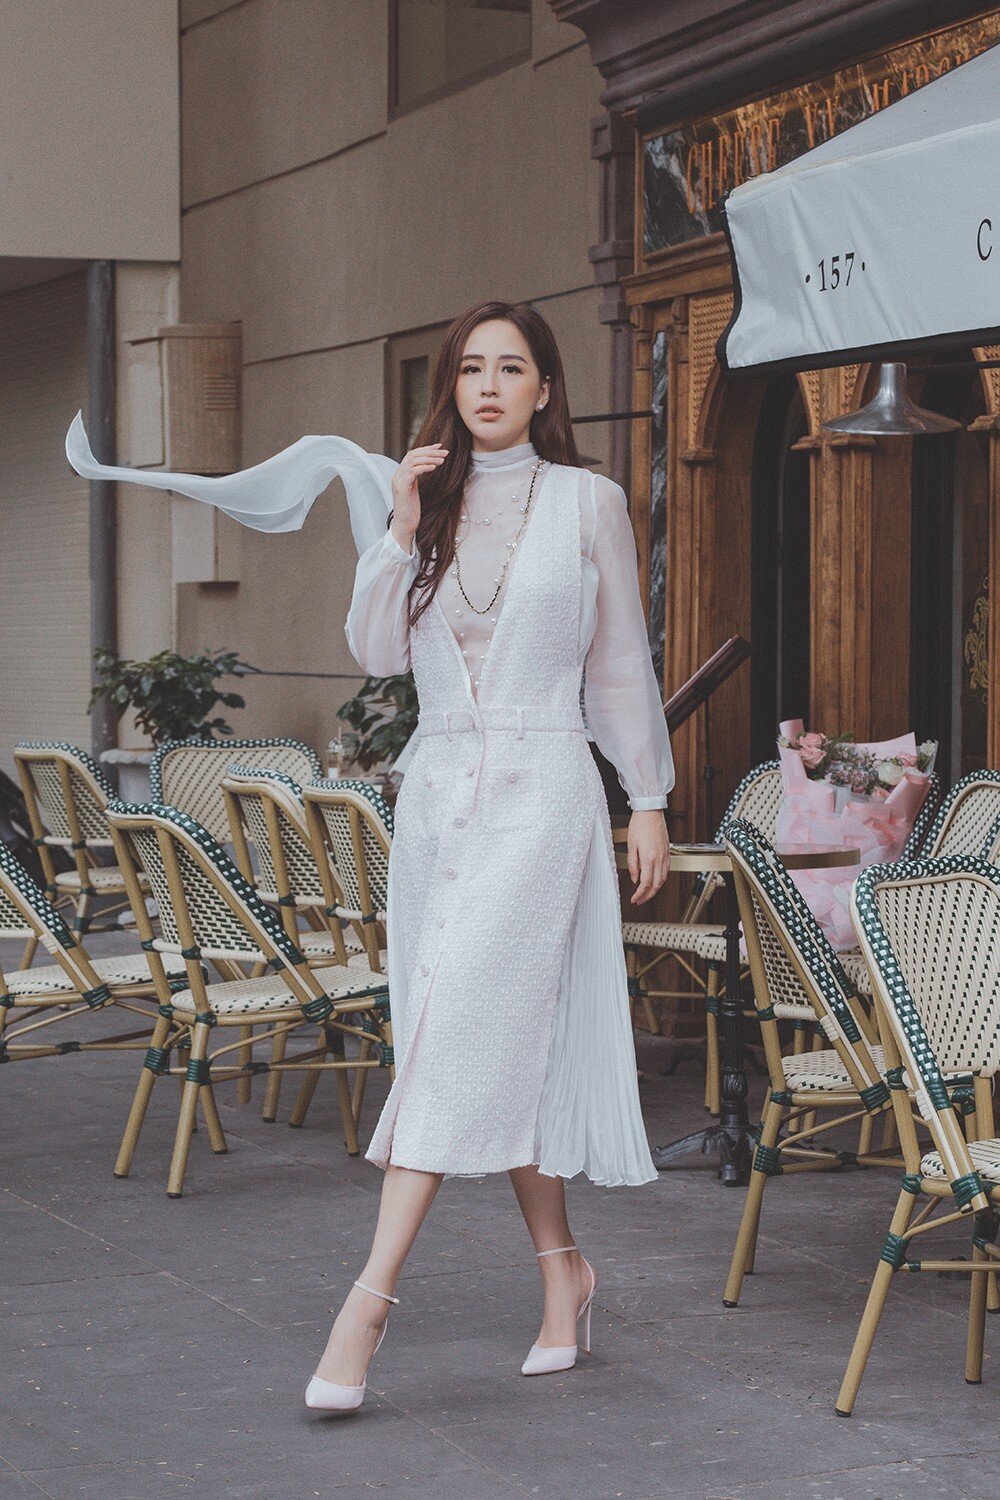 Hoa hậu Mai Phương Thúy từ bỏ mua đồ hiệu ảnh 2